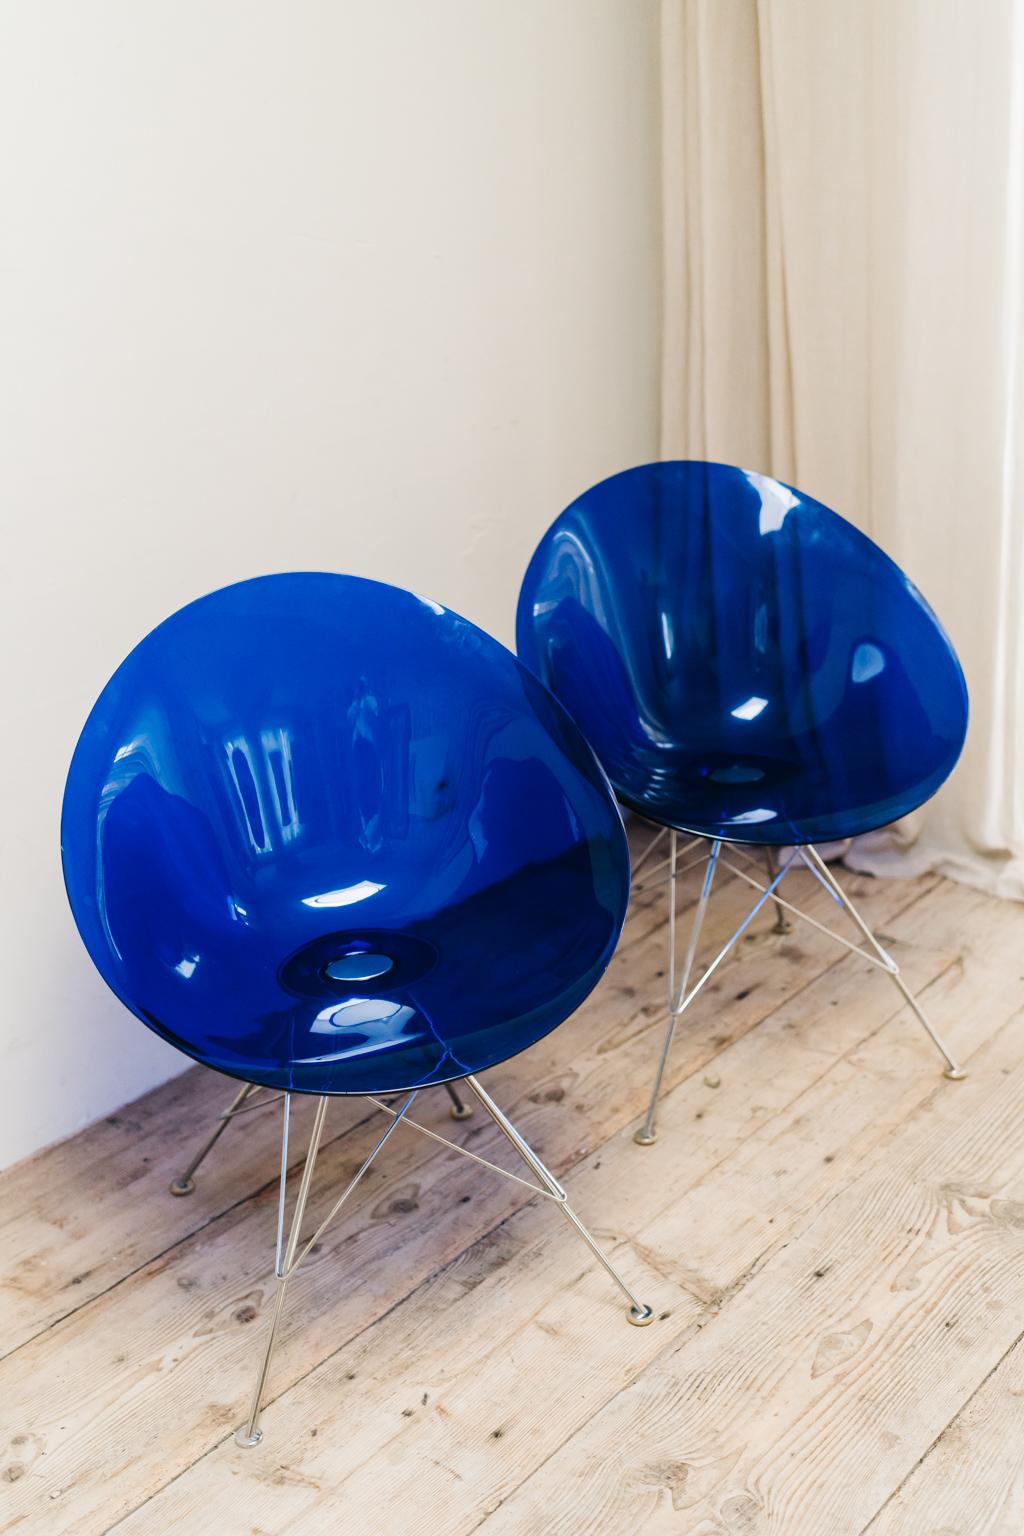 Die von Philippe Starck für das italienische Unternehmen Kartell entworfenen Plexiglas-Stühle Eros, die in einer wunderschönen blauen Farbe 
1970's ...